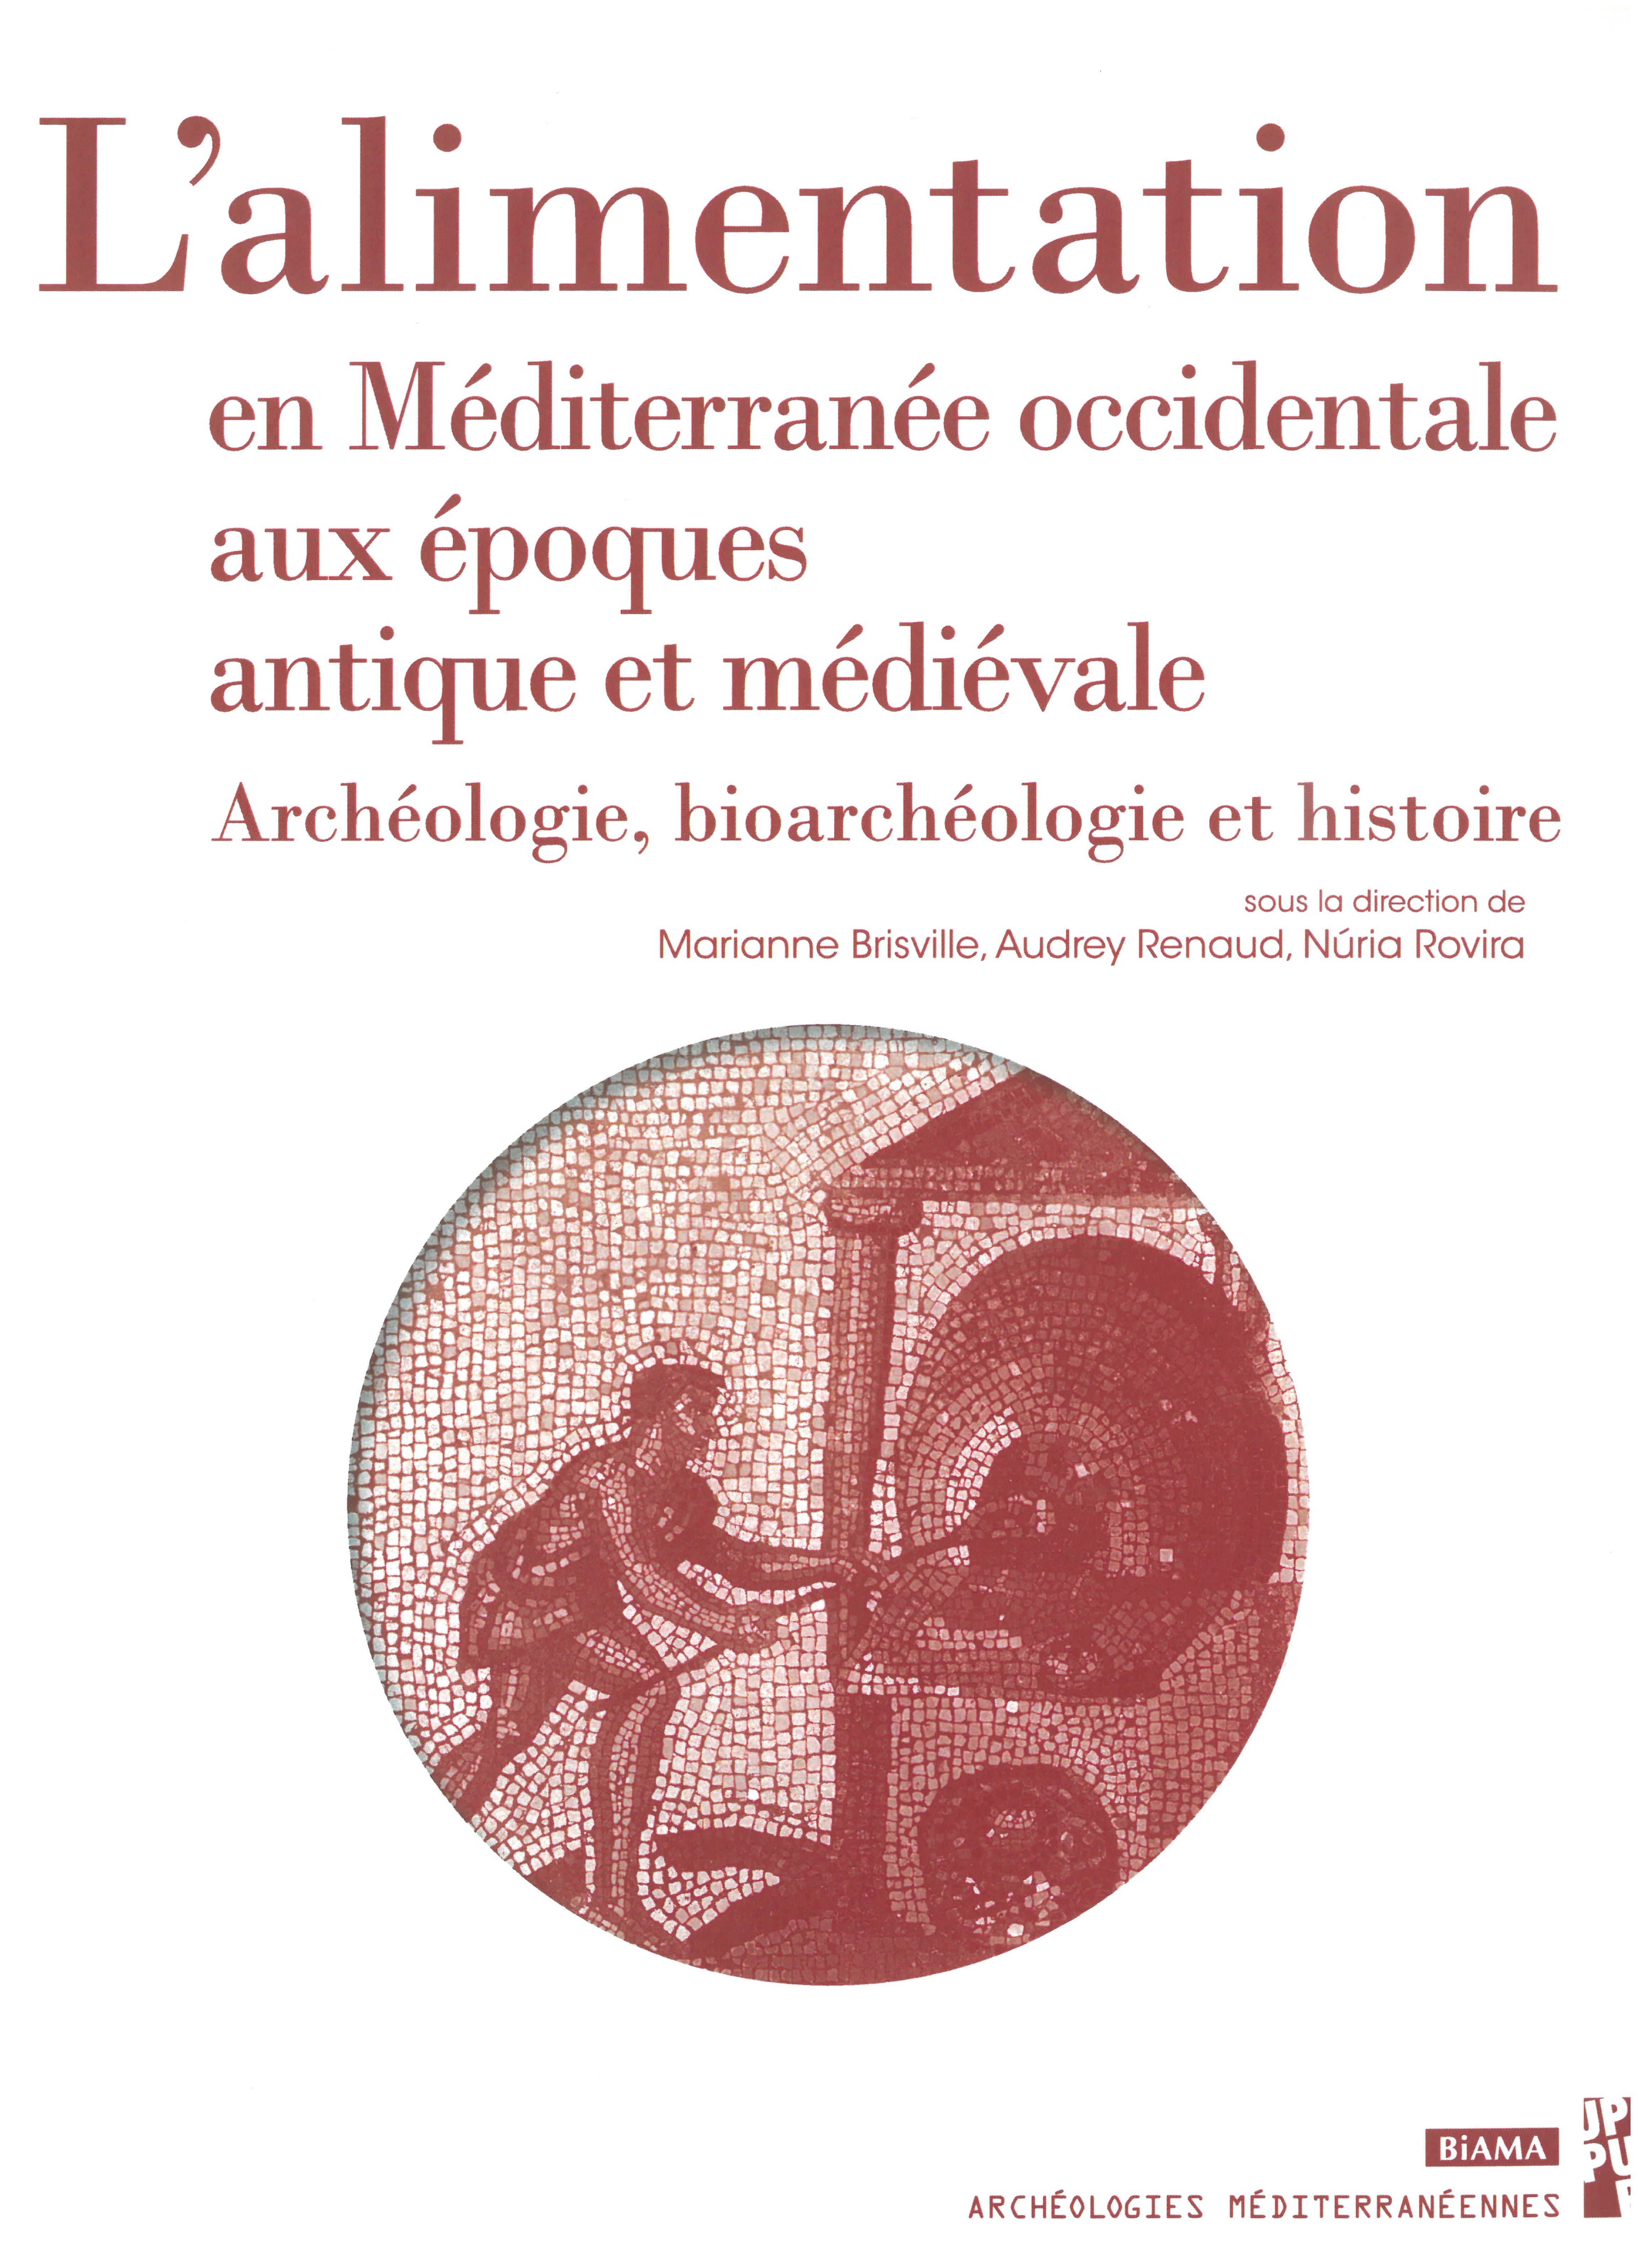 29, 2021 - L'alimentation en Méditerranée occidentale aux époques antique et médiévale